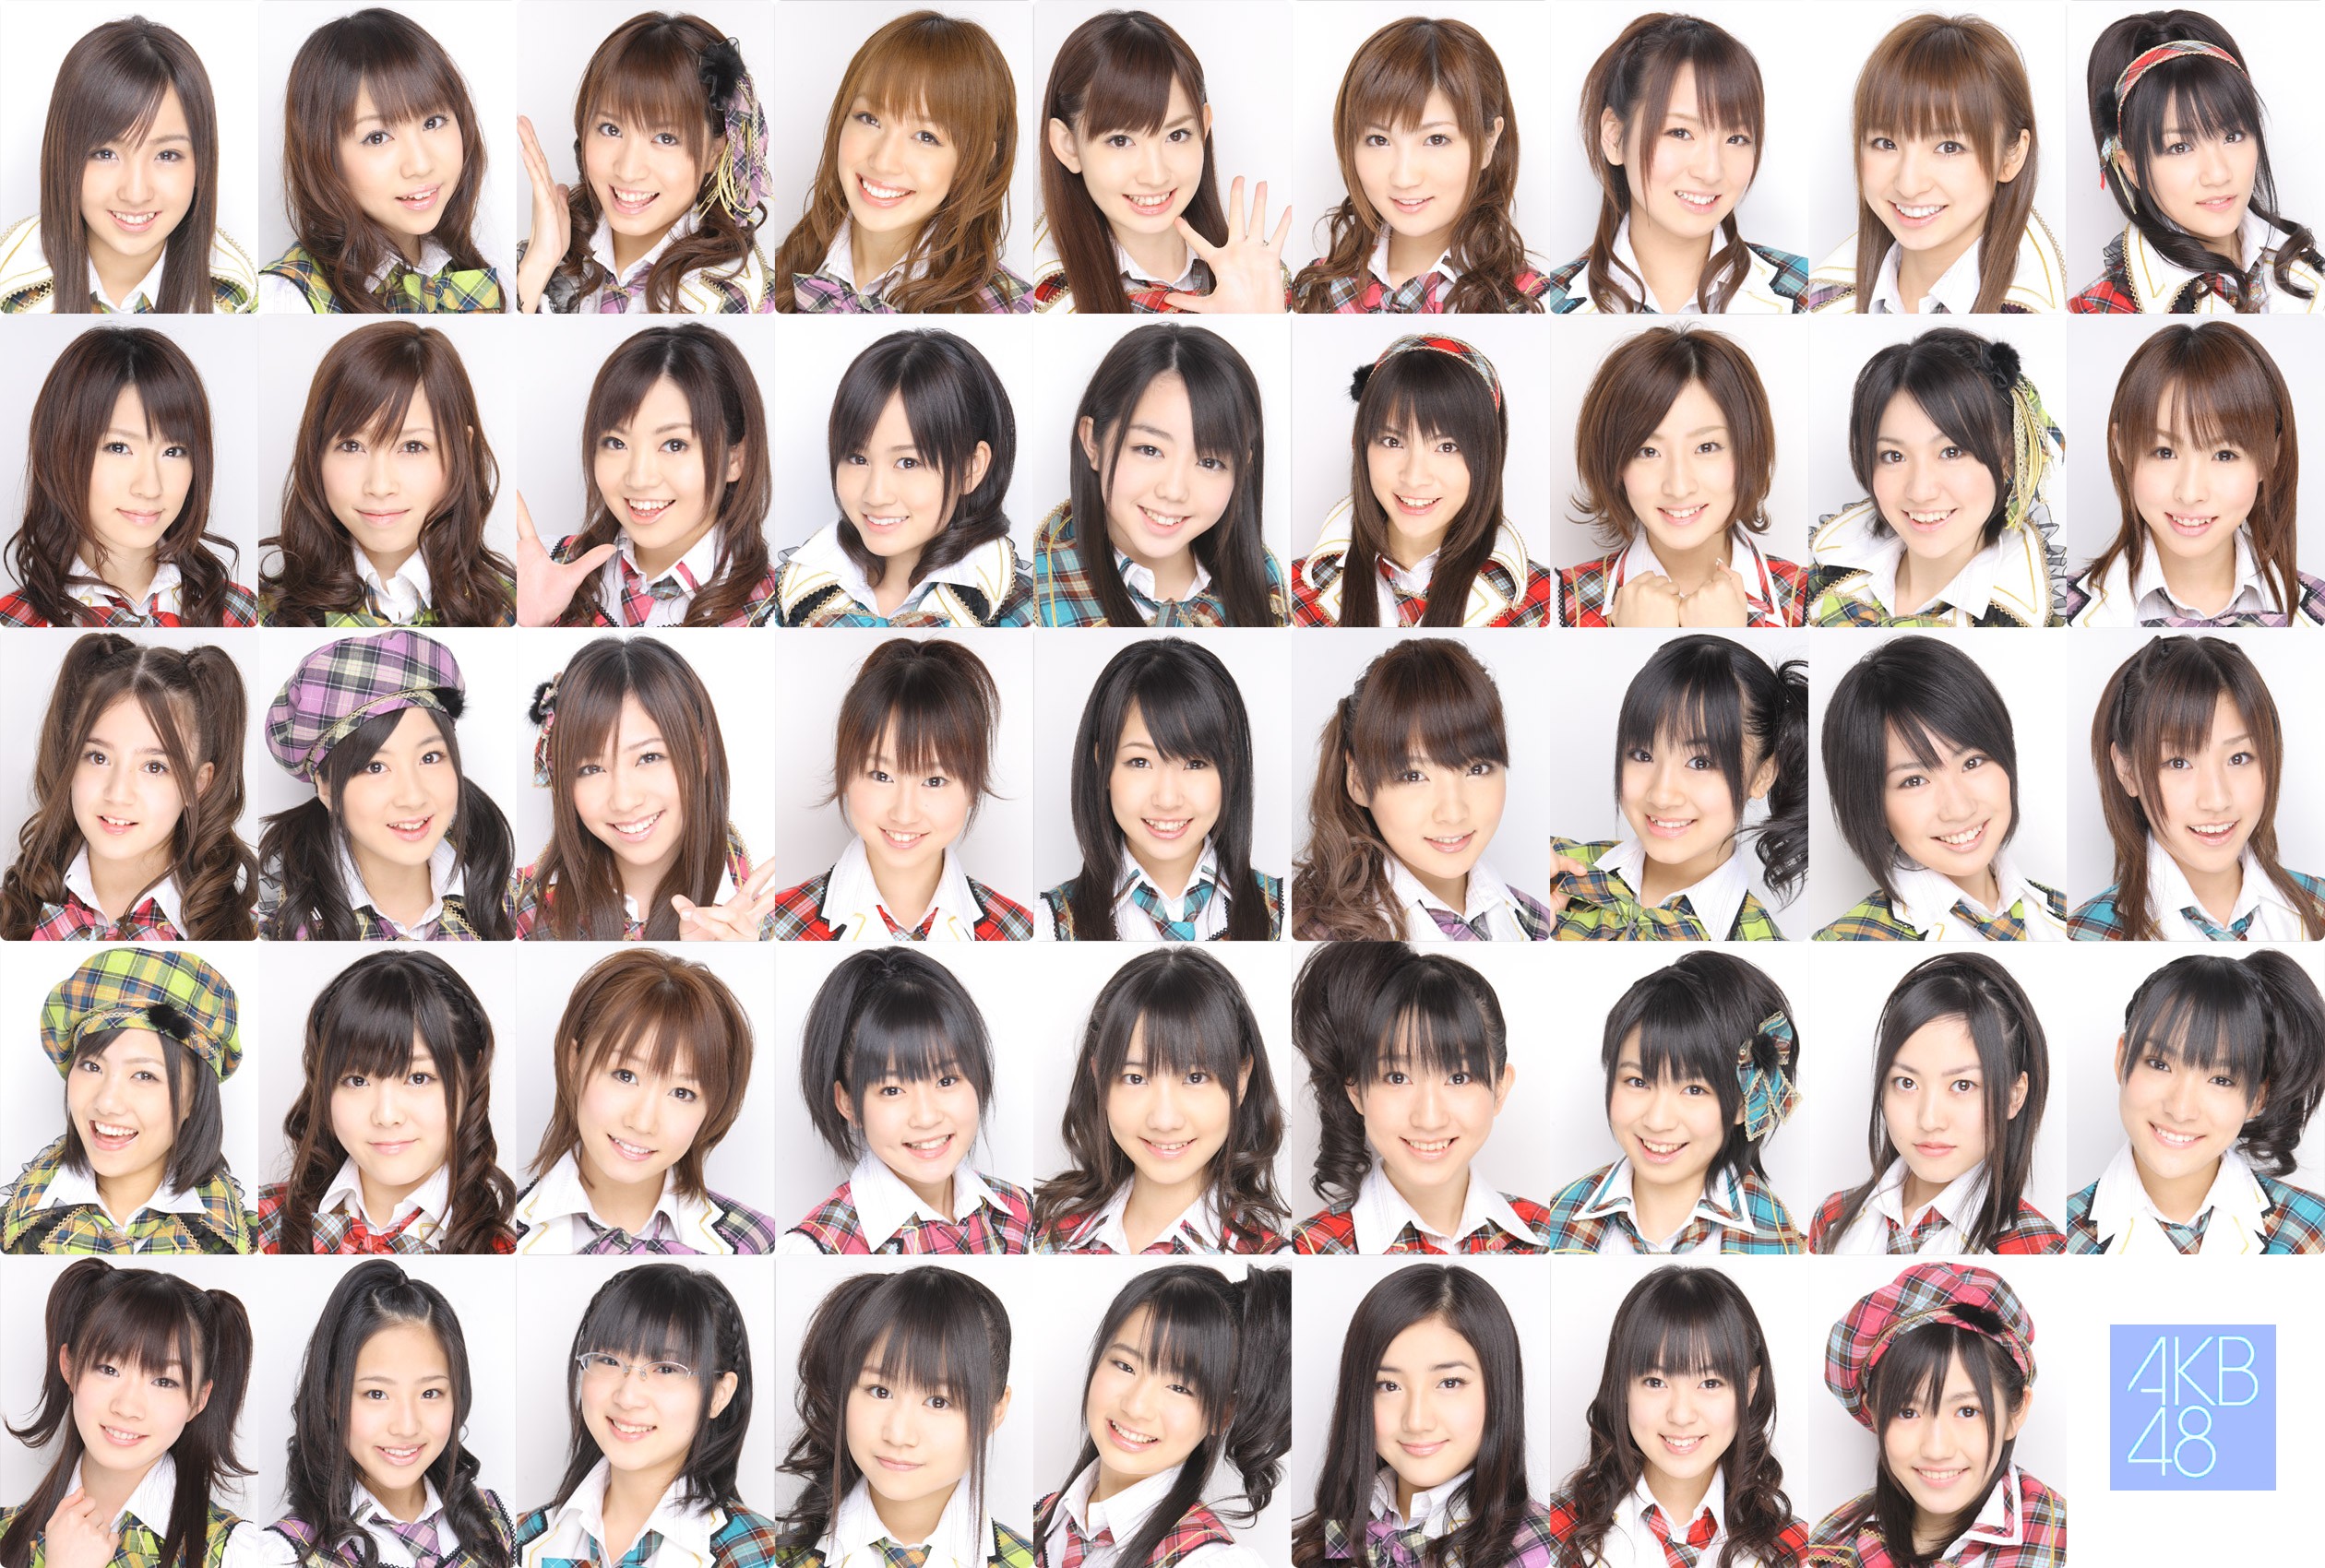 AKB48 - AKB48 Wiki